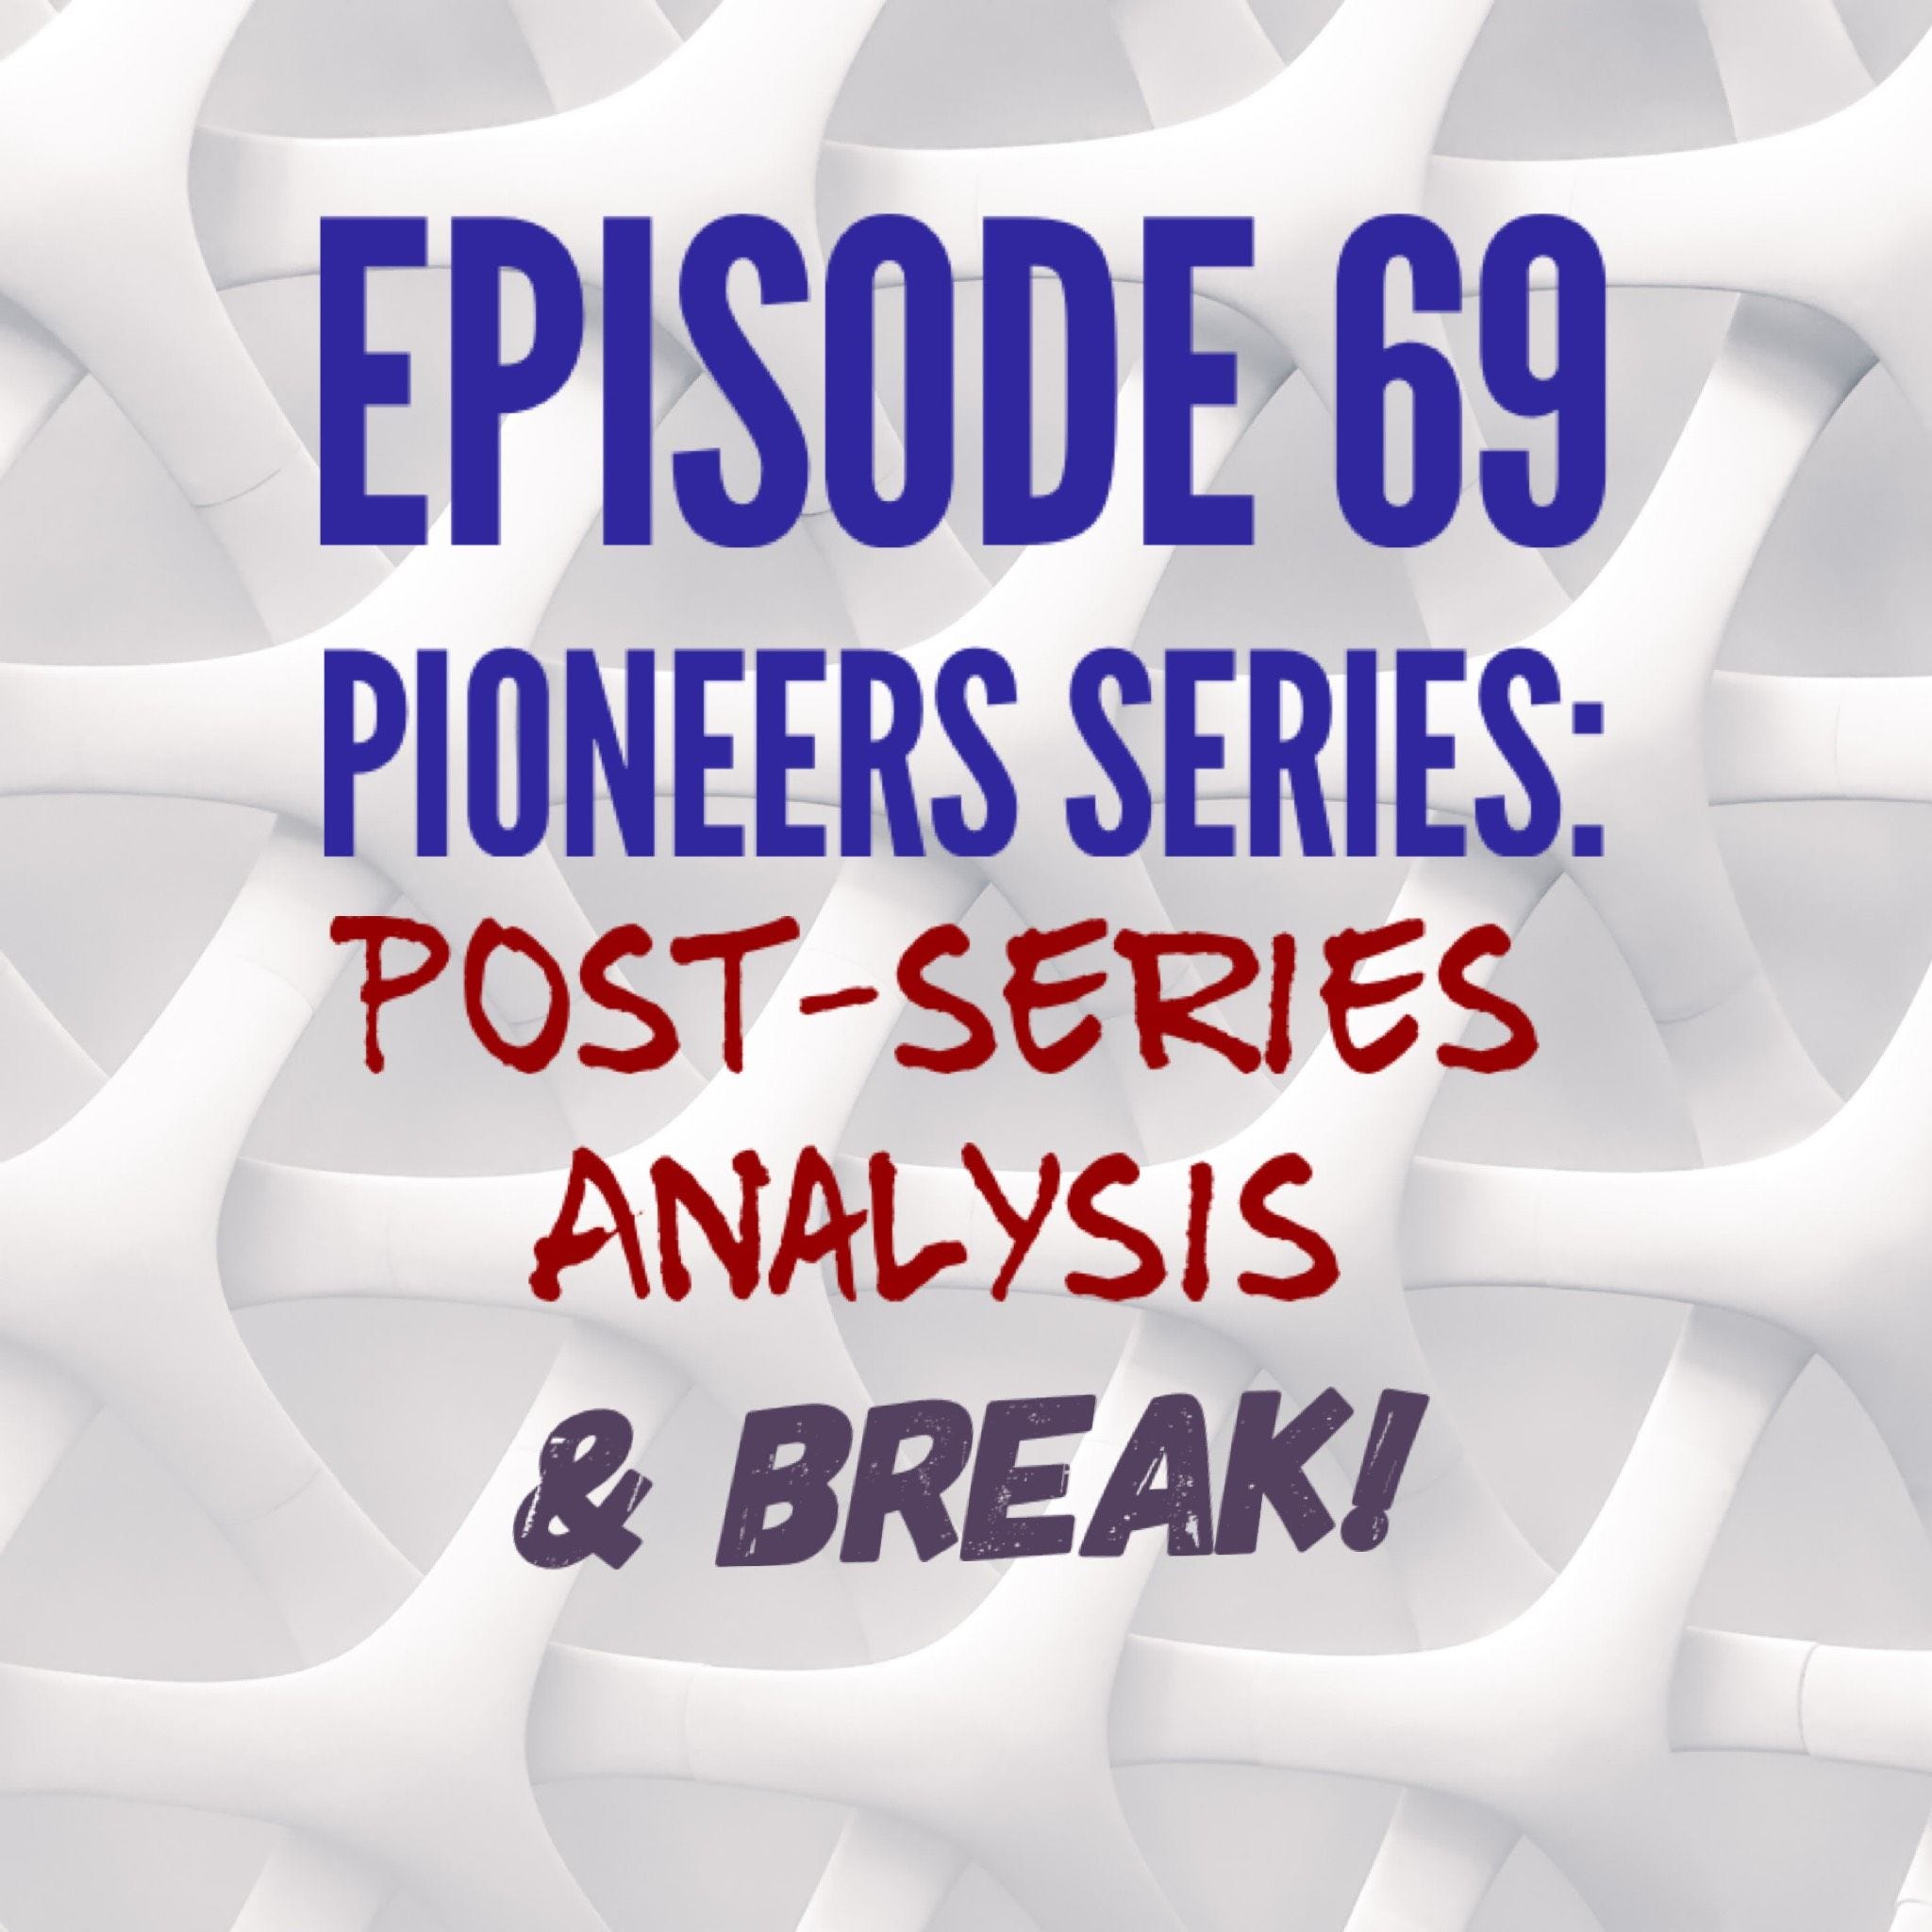 69 - Pioneers Series: Post-Series Analysis & Break!